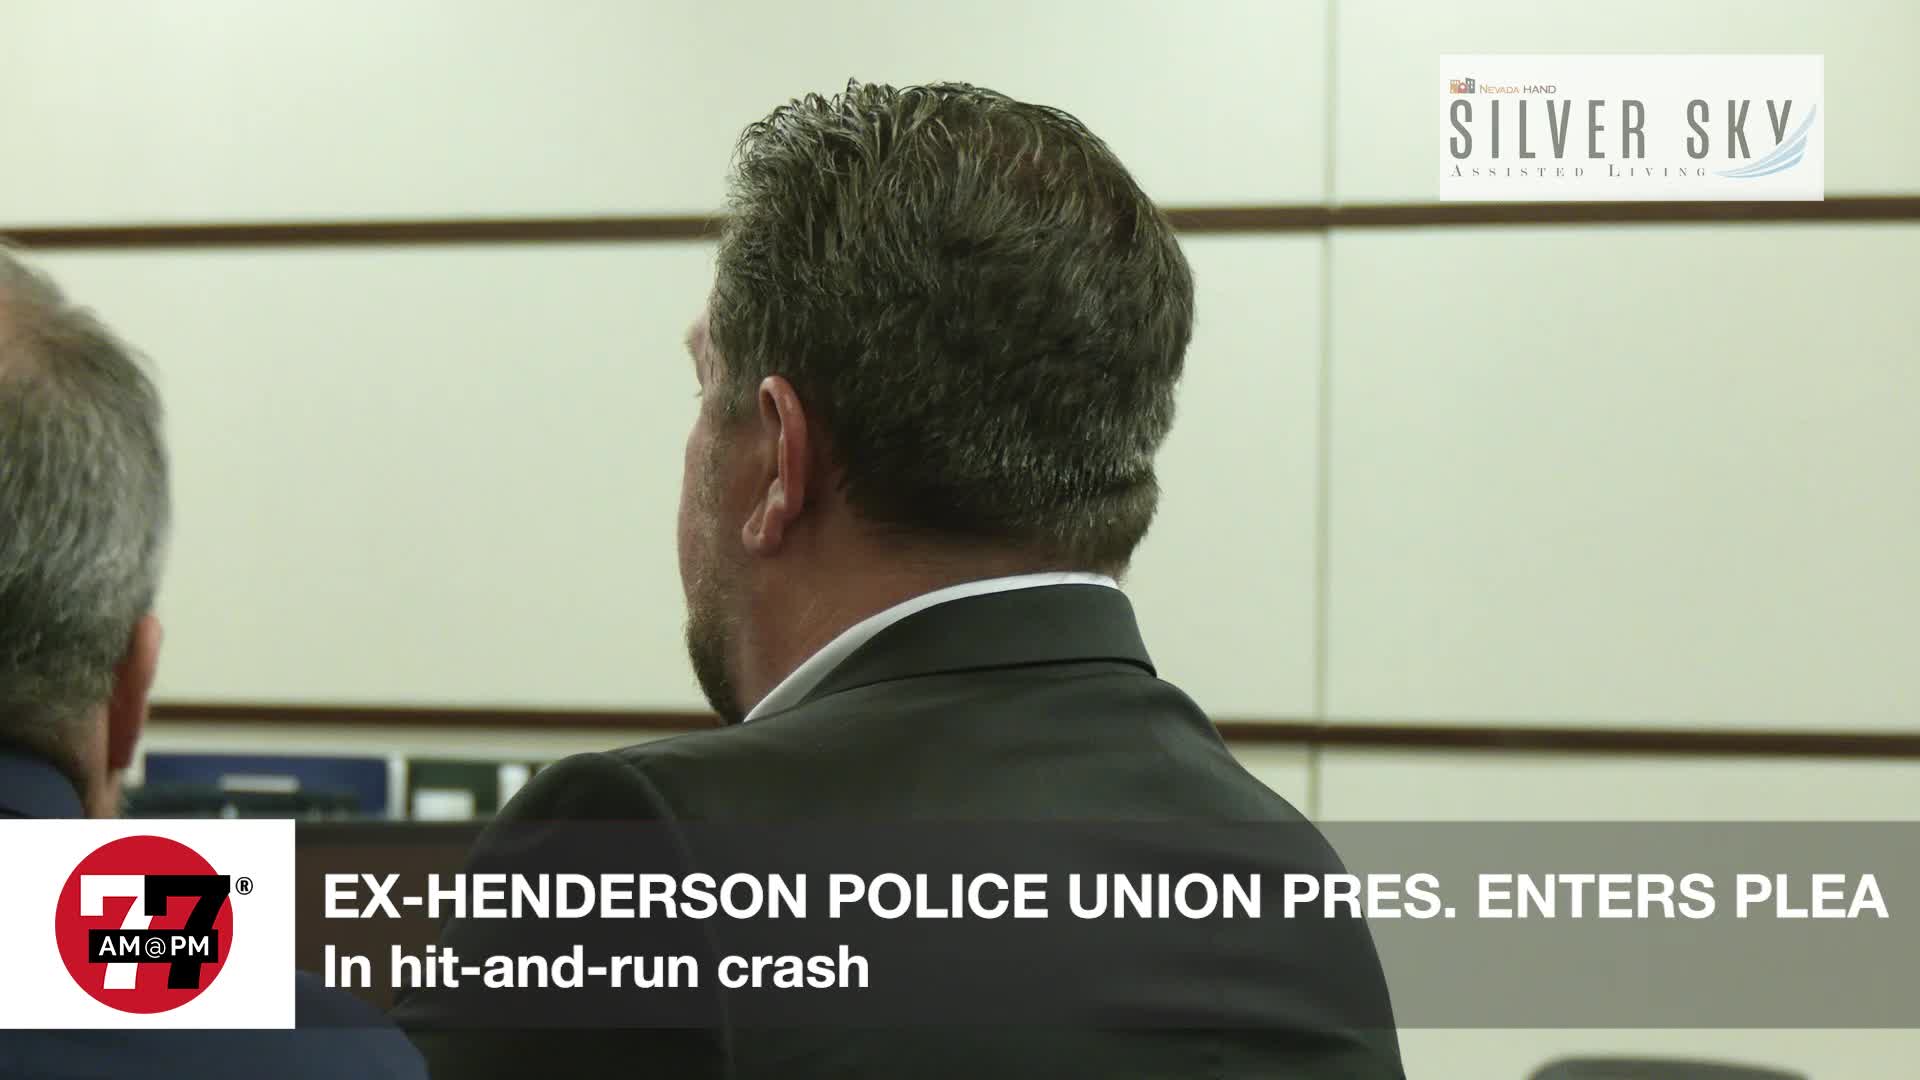 Ex-Henderson police union pres. enters plea